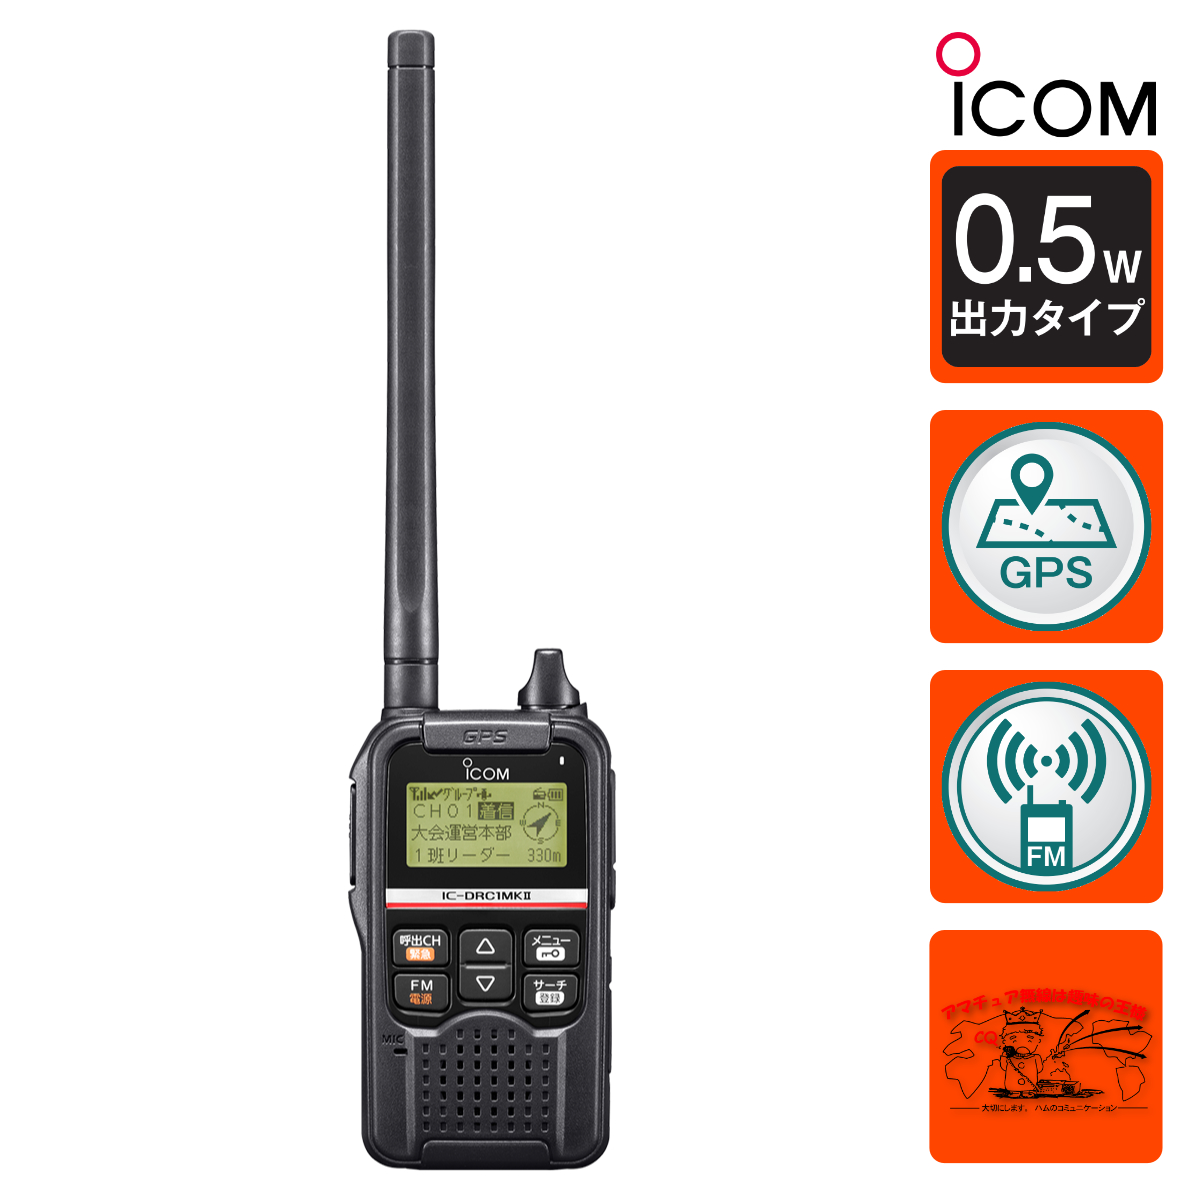 IC-DRC1MK2 #13 アイコム デジタル小電力コミュニティ無線機 送信出力 500mW | 中部特機産業　楽天市場店